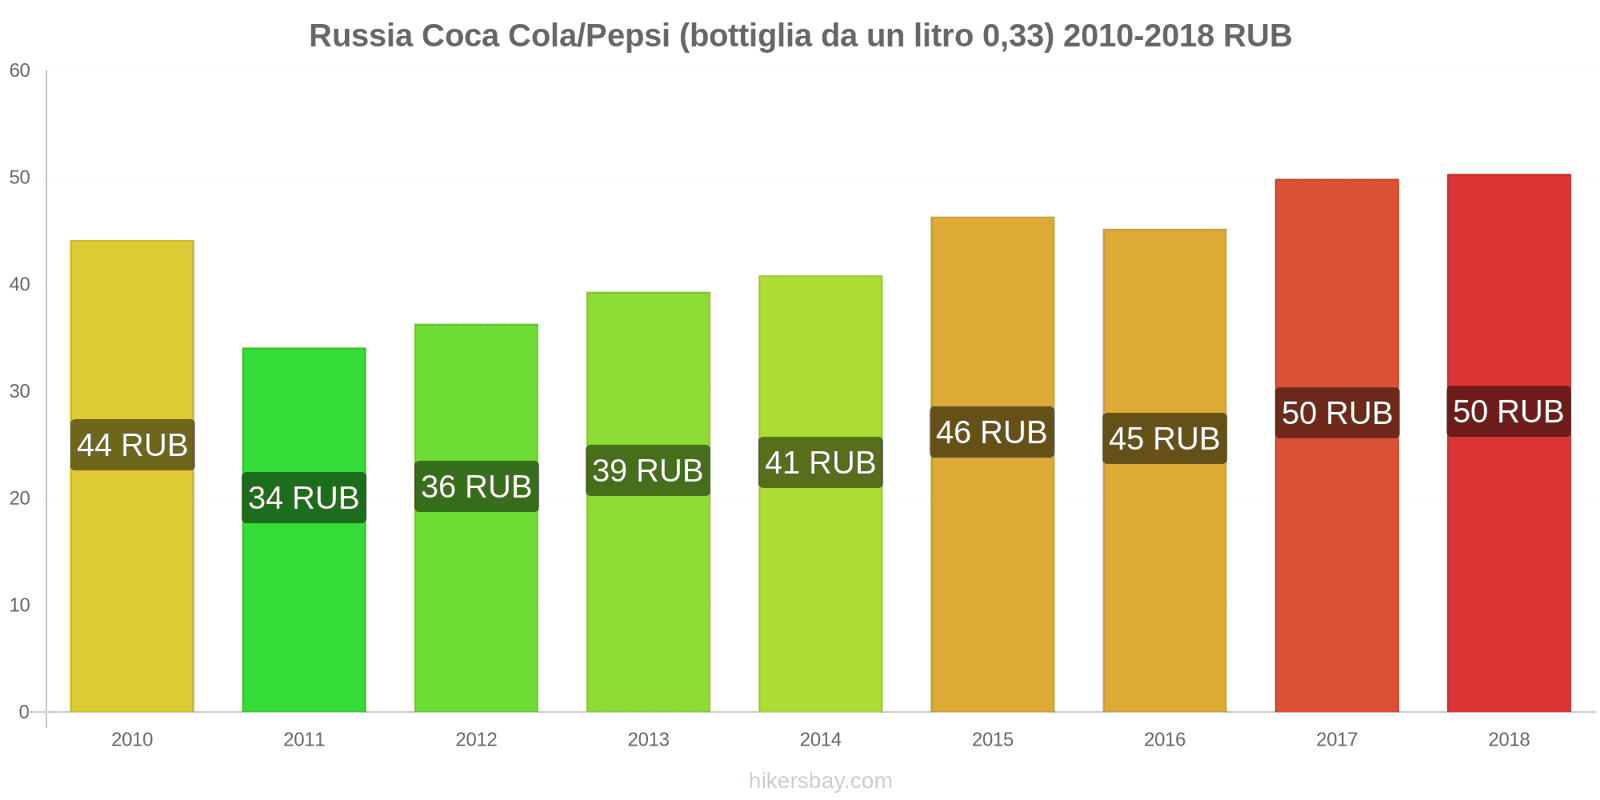 Russia cambi di prezzo Coca-Cola/Pepsi (bottiglia da 0.33 litri) hikersbay.com